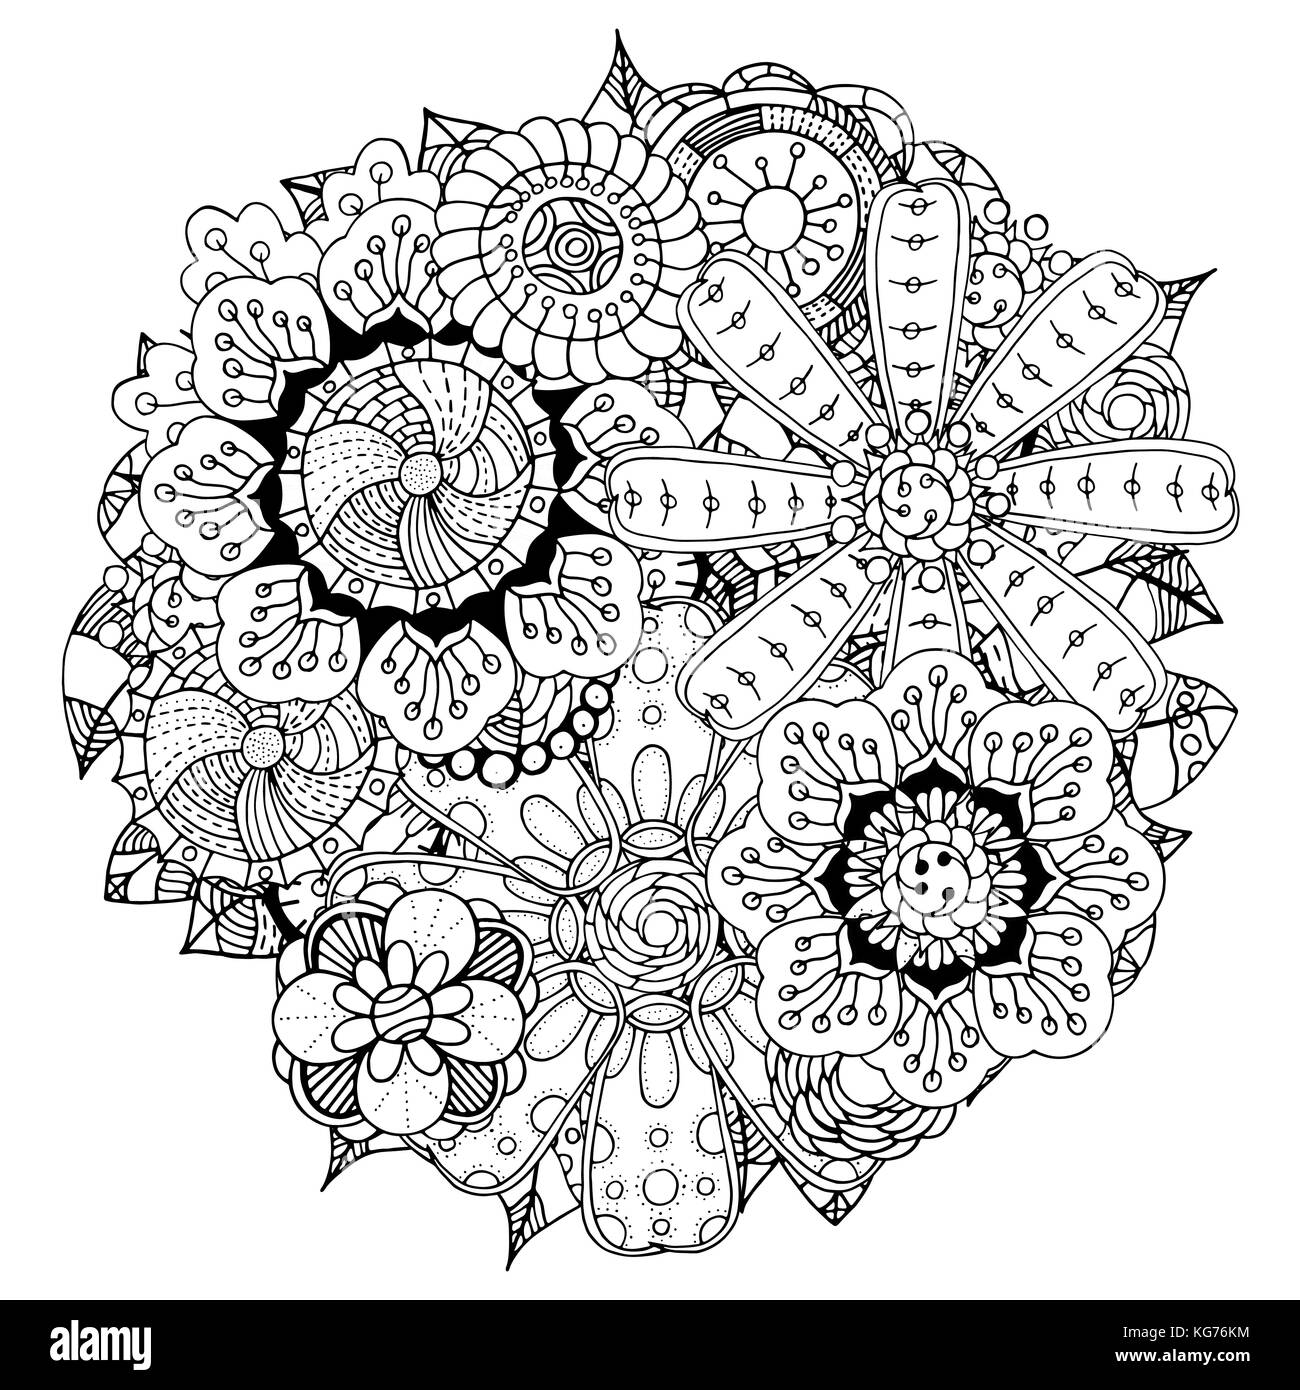 Schwarze und weiße Kreis Blume Ornament, dekorative runde Spitze Design. floralen Mandala. Hand gezeichnet Tinte Muster von persönlichen Skizze trace gemacht. Stock Vektor